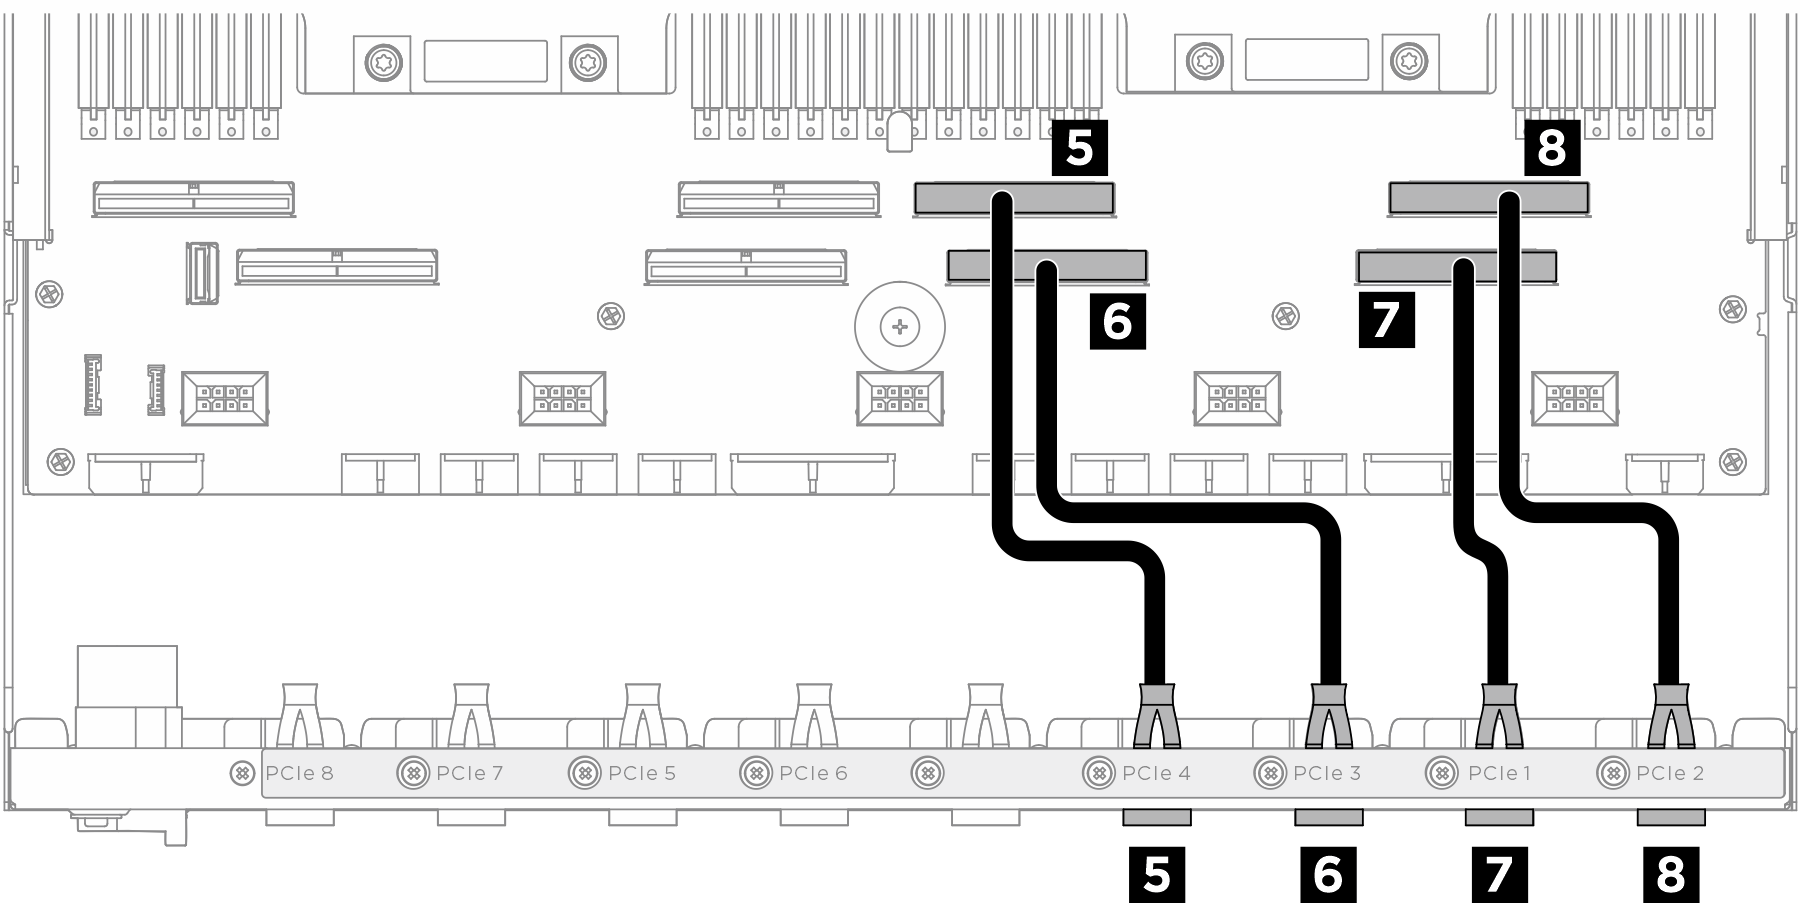 Placa del conmutador PCIe cable routing (signal cables)